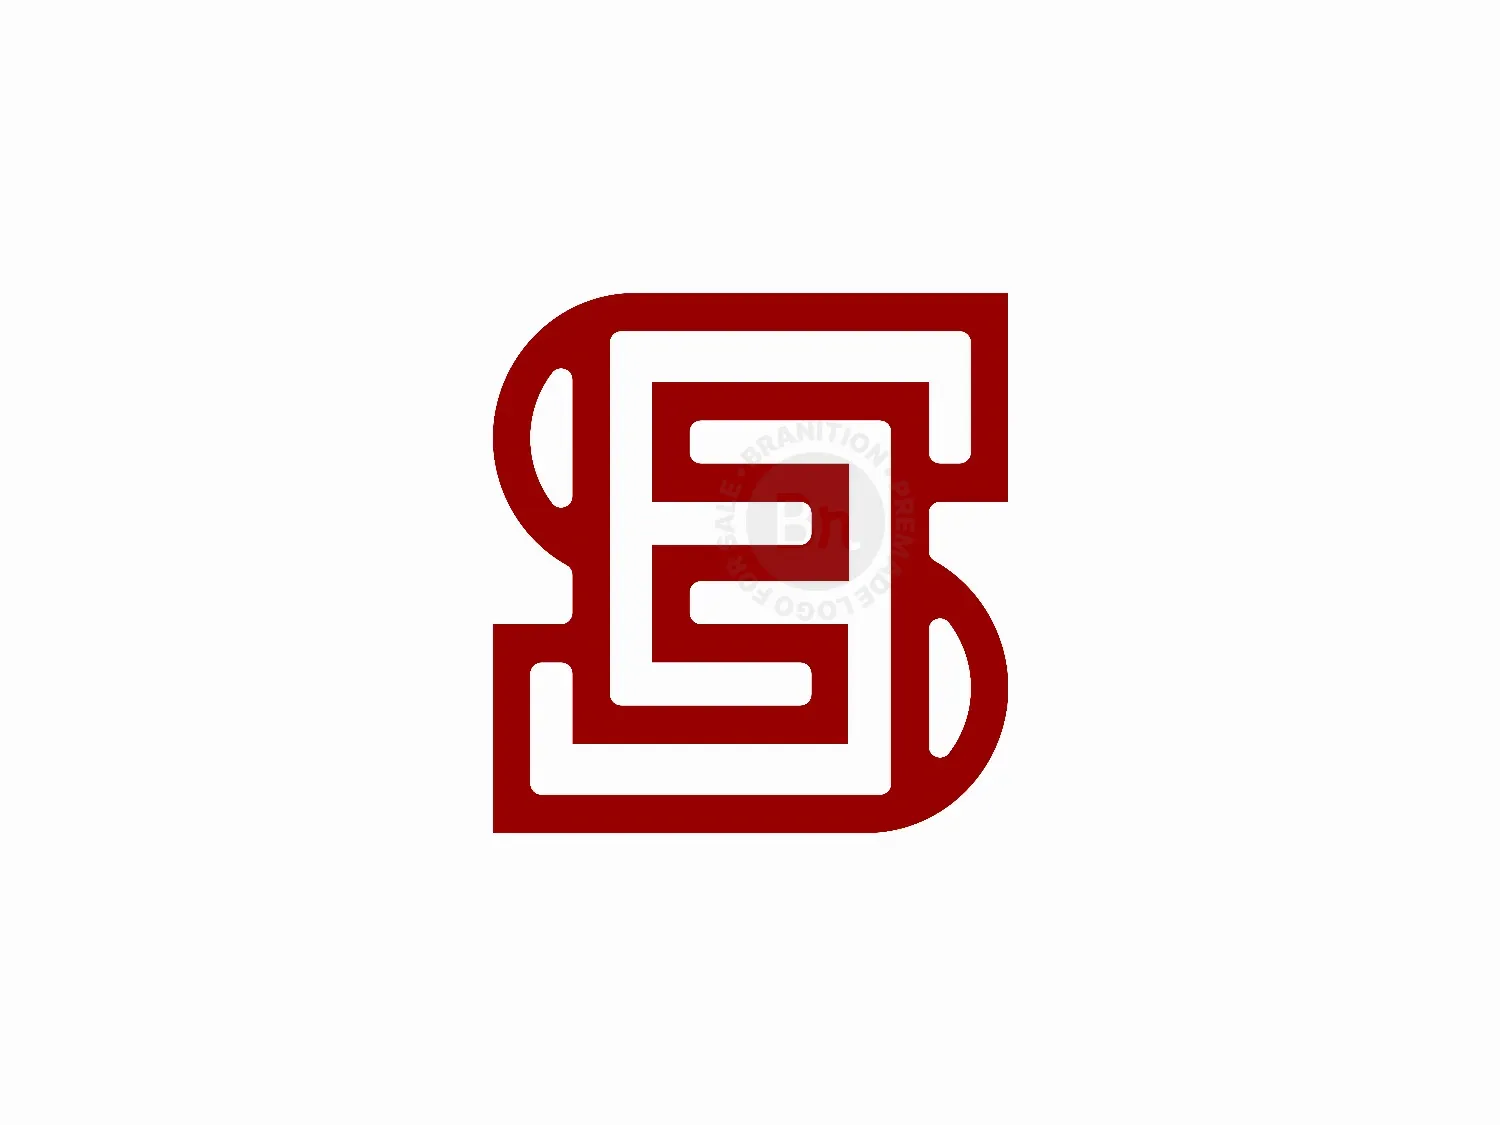 Letter SE ES Logo